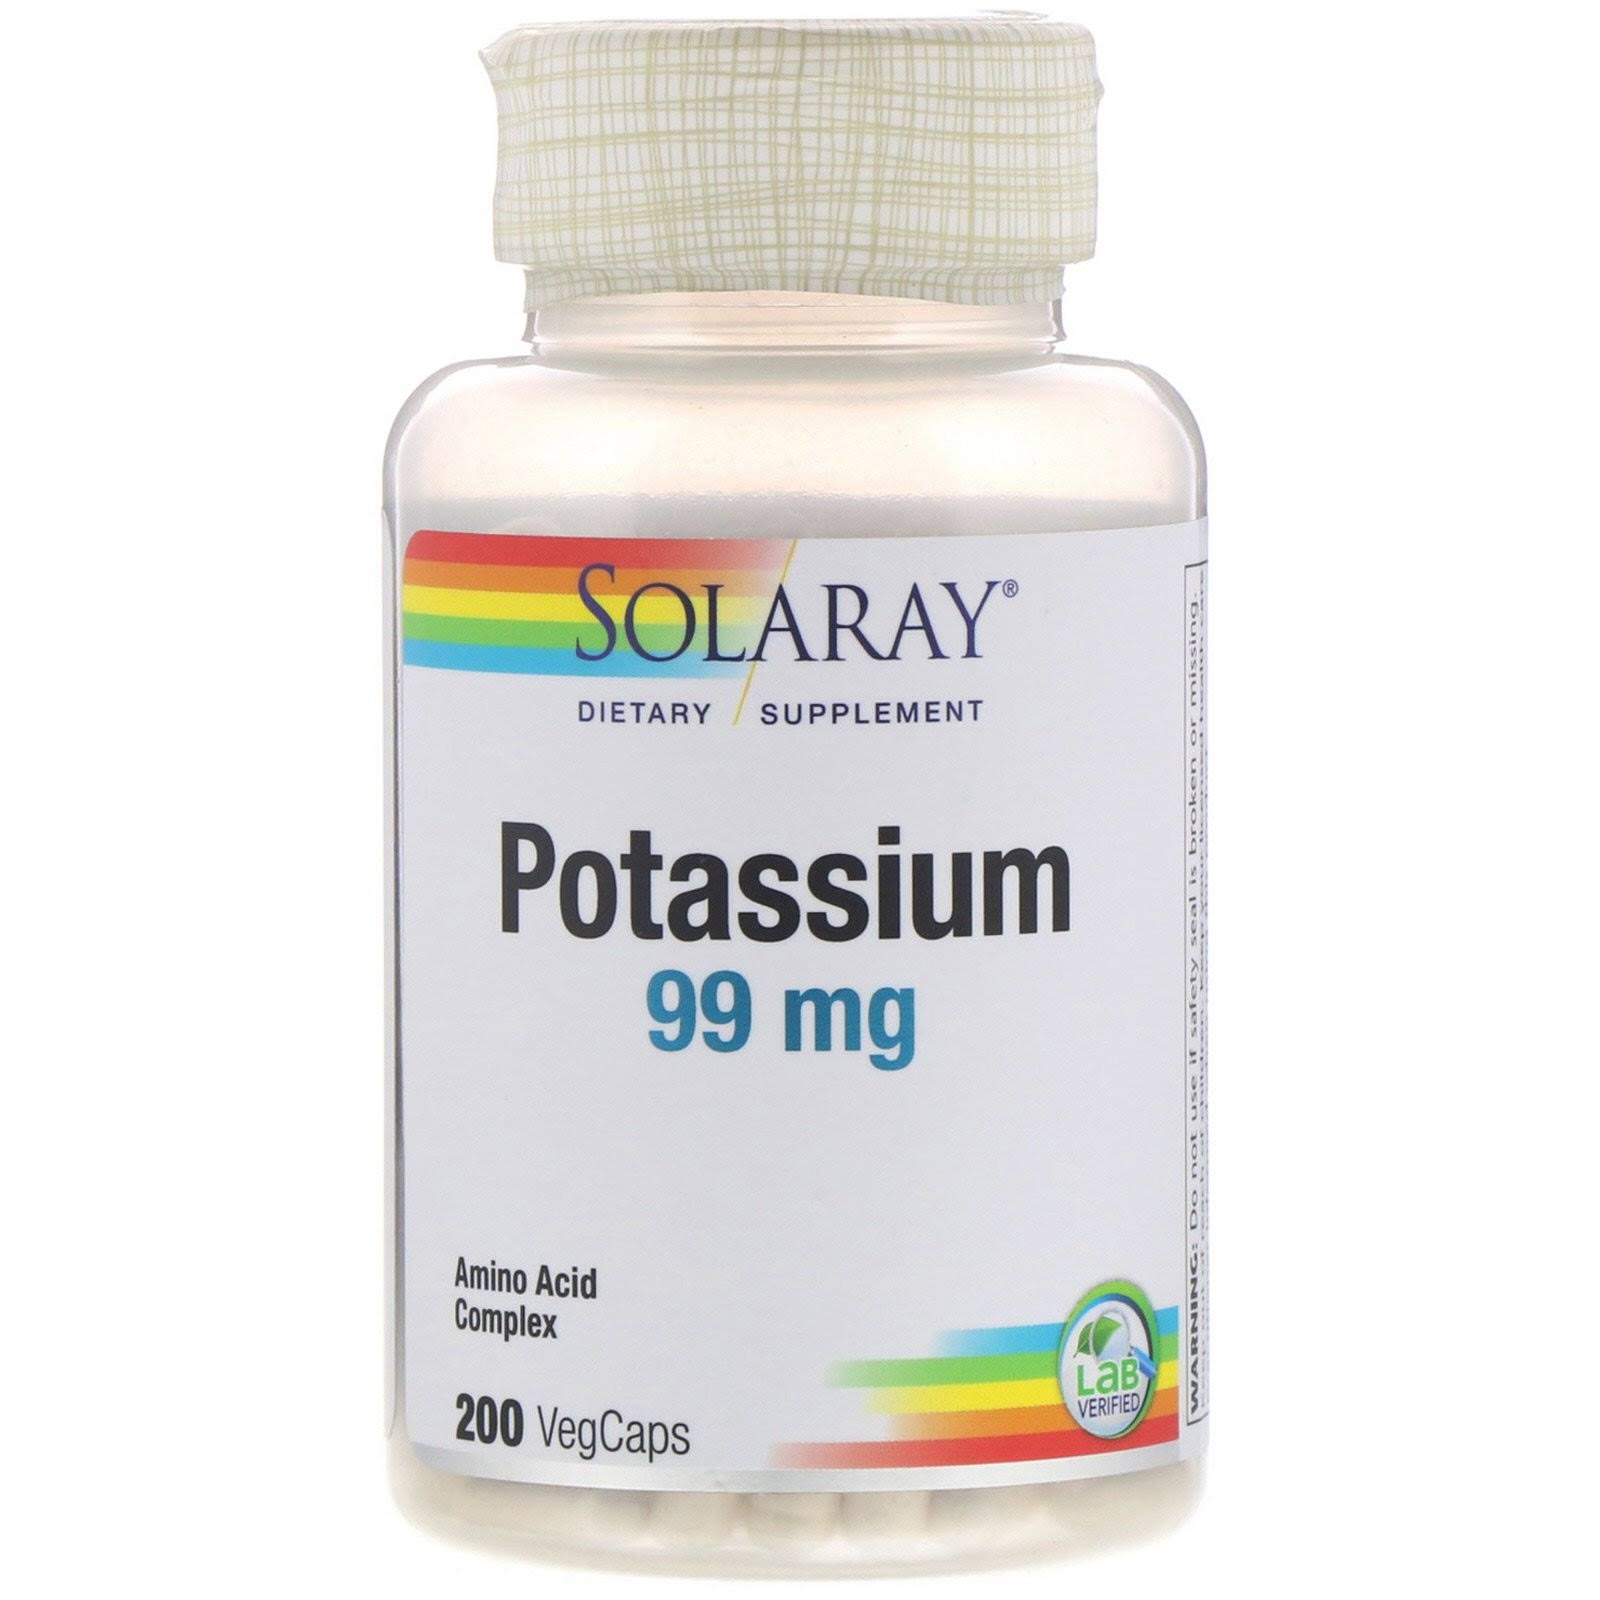 Solaray Potassium 99 mg - 200 VegCaps